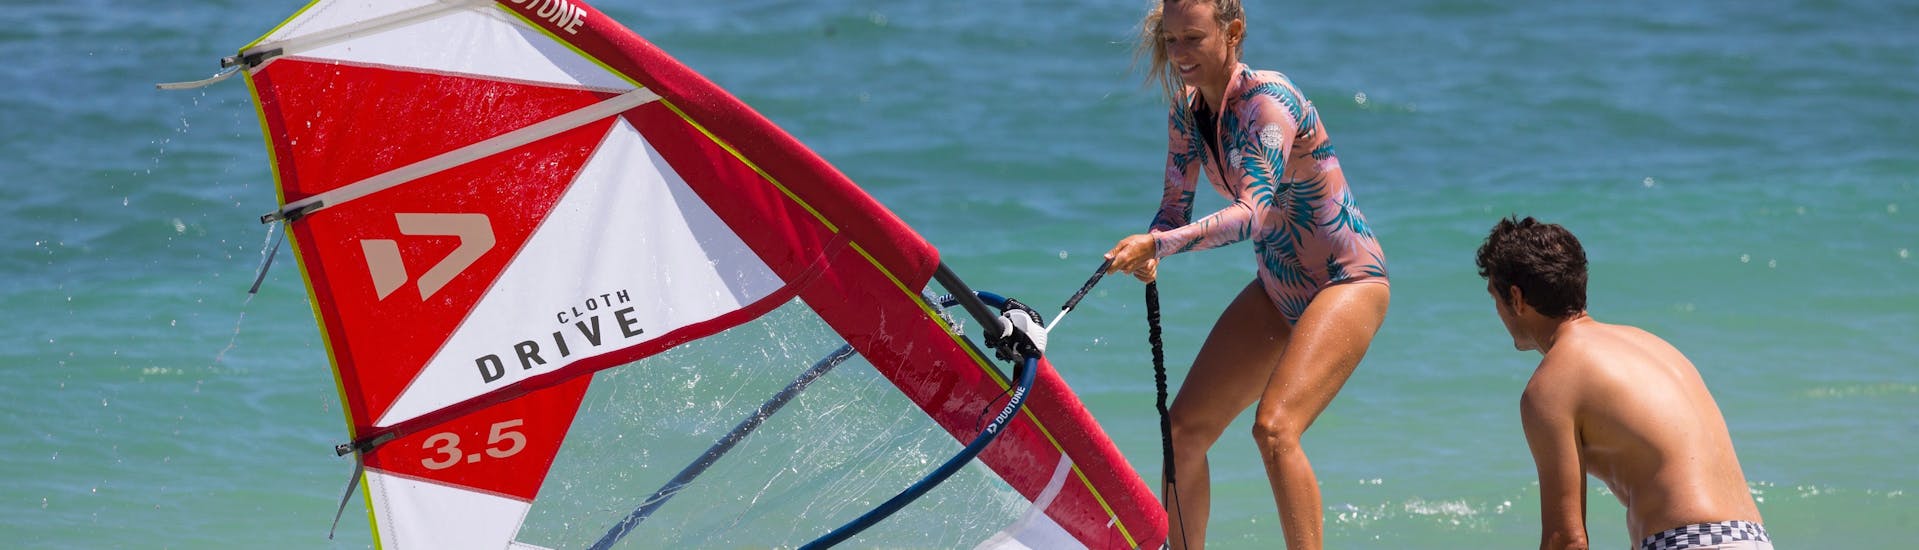 Vrouwen surfen tijdens de windsurfles - gevorderden met Water Donkey Wind & Kitesurfing Viganj.